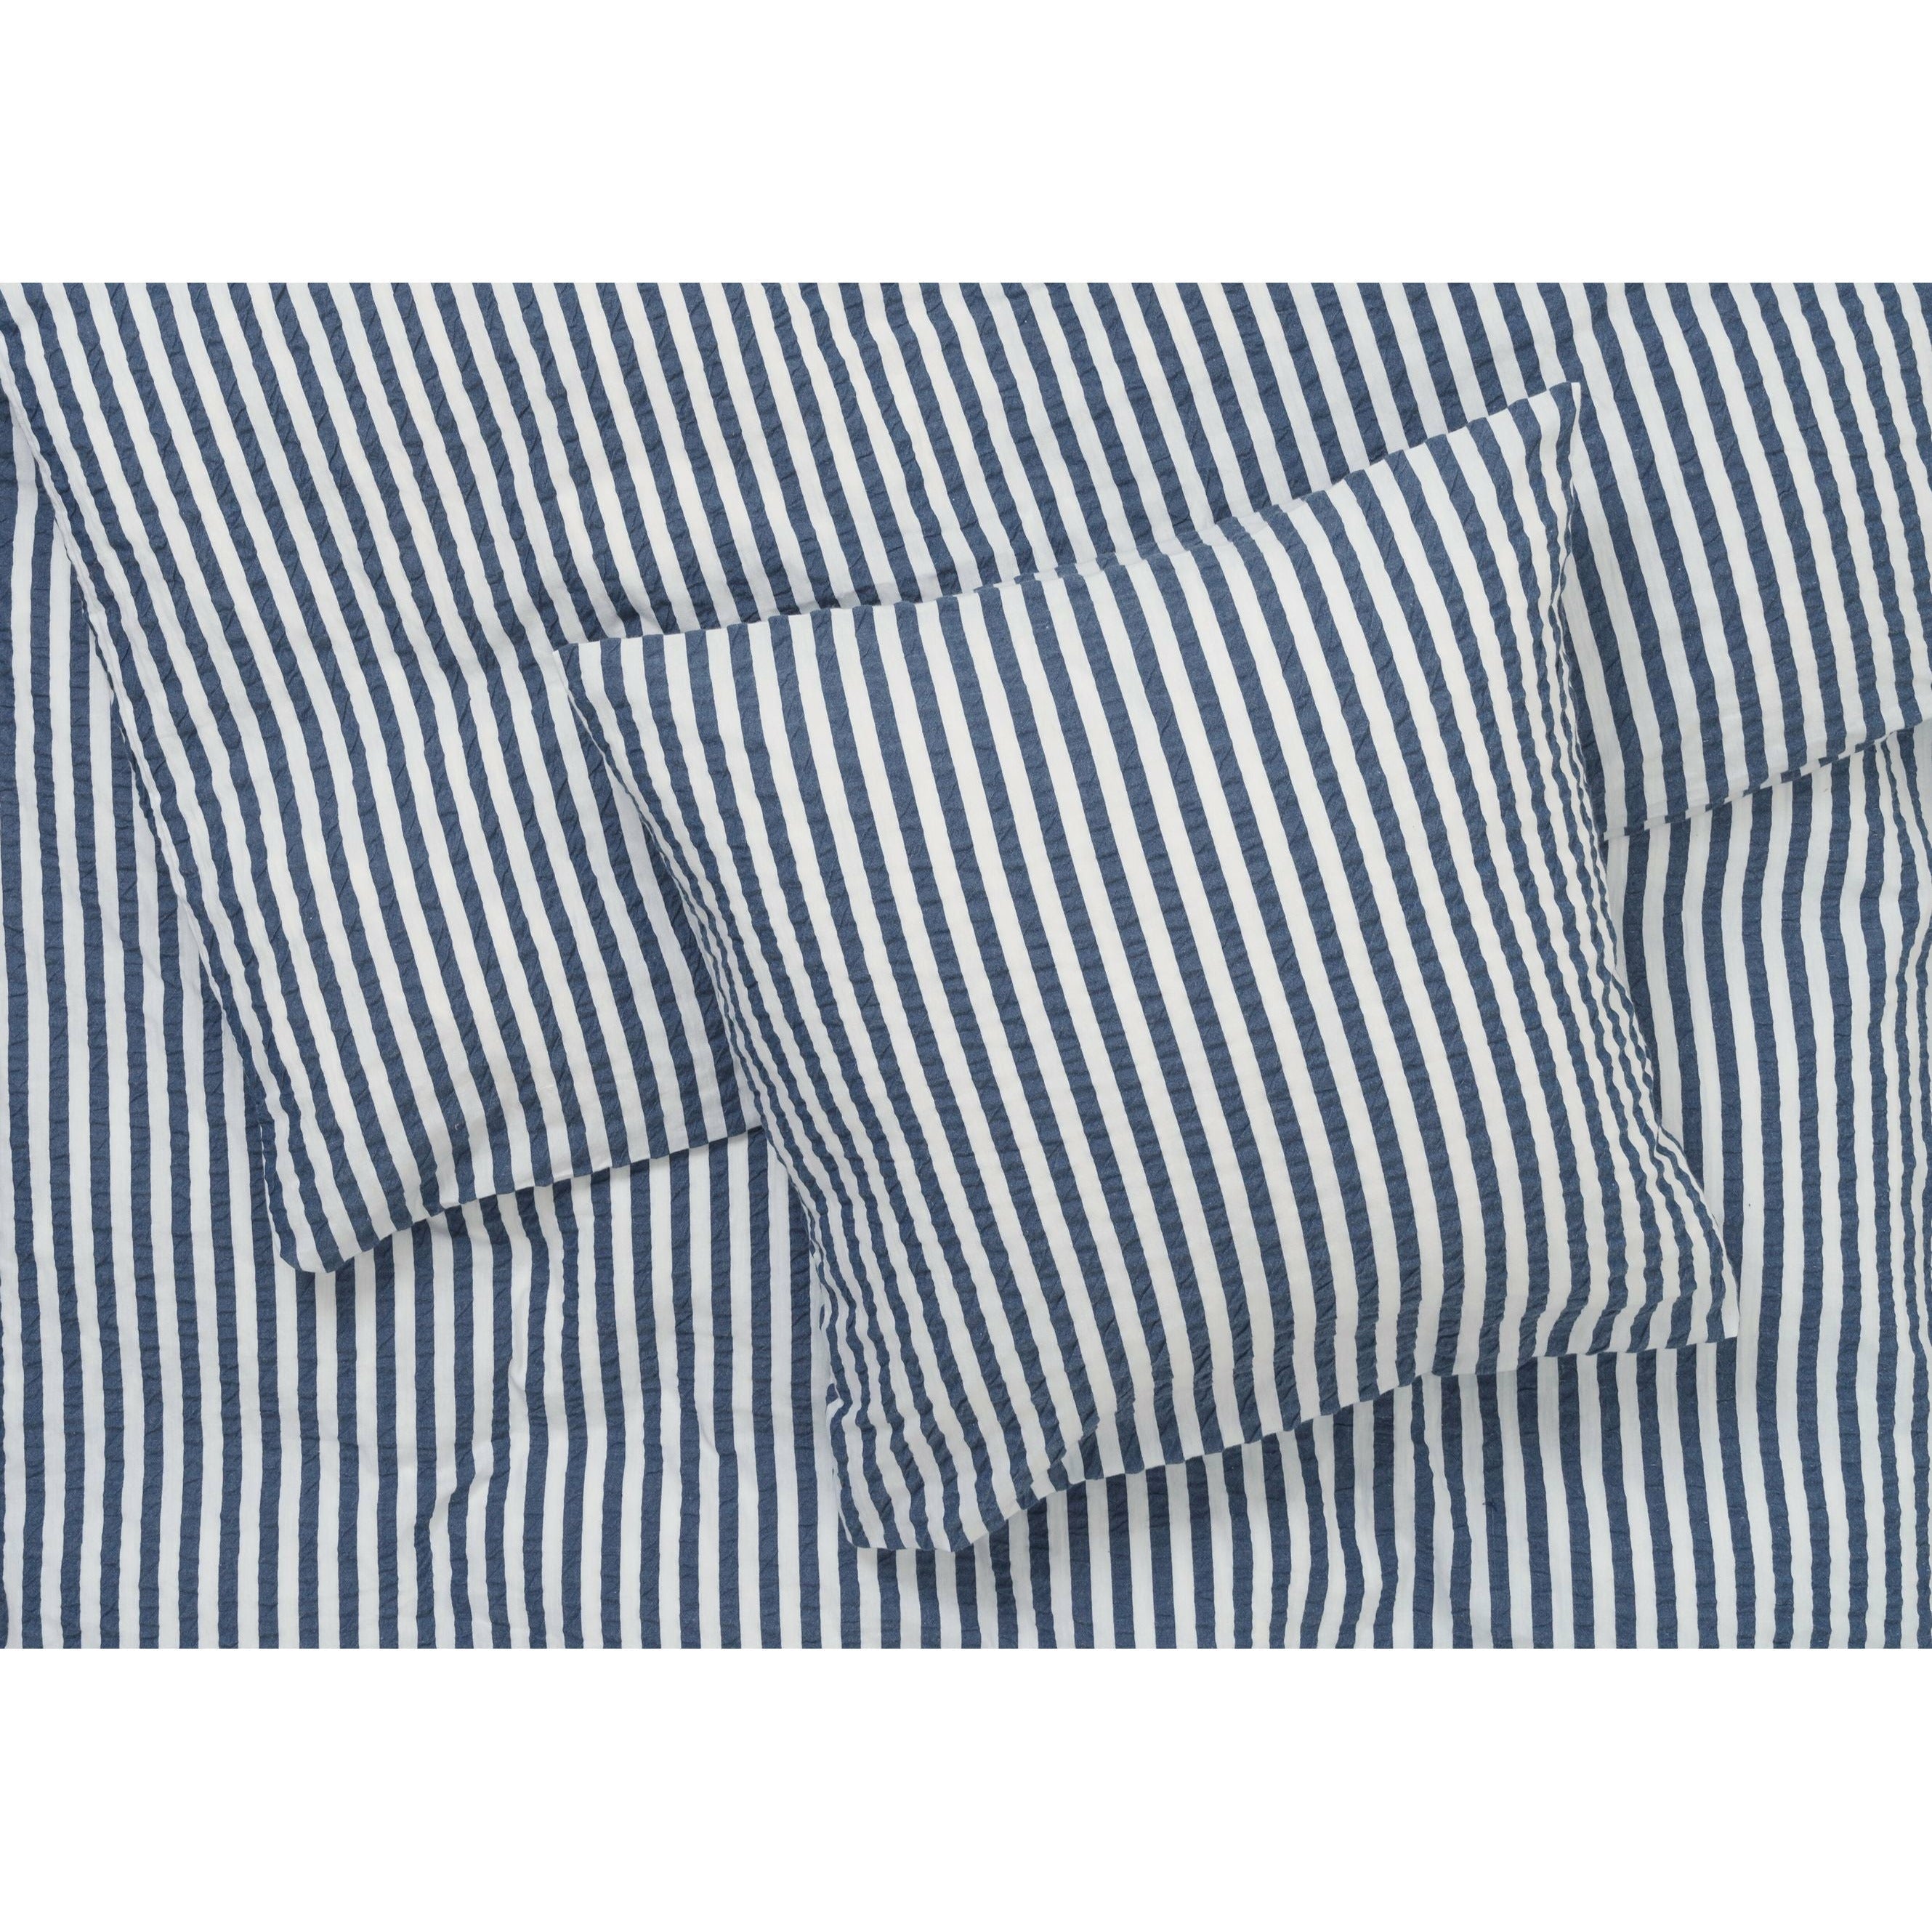 JUNA Bæk y Bølge Lines Bed Linen 140x200 cm, azul oscuro/blanco